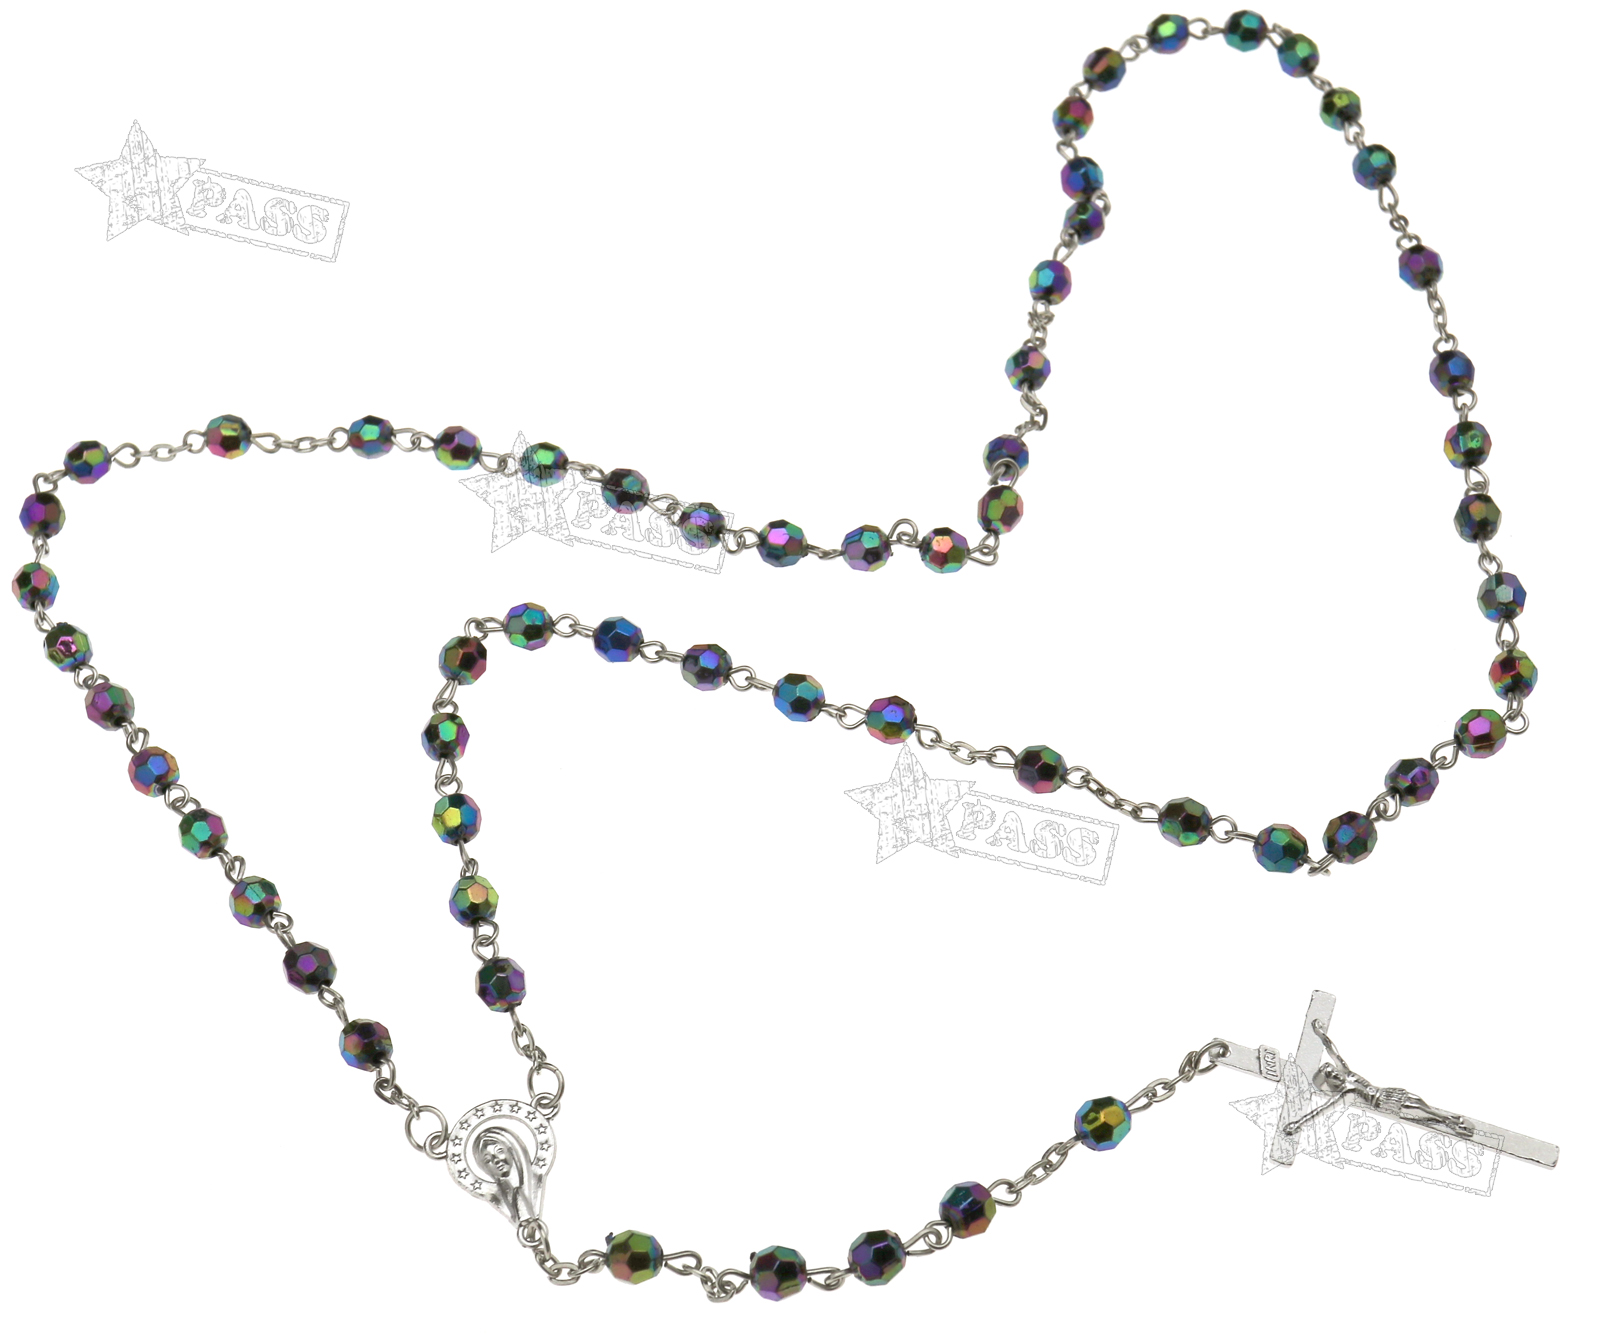 Jesus Kreuz Halskette Madonna Rosenkranz Perlenlette Kreuzkette Ypsilonkette 